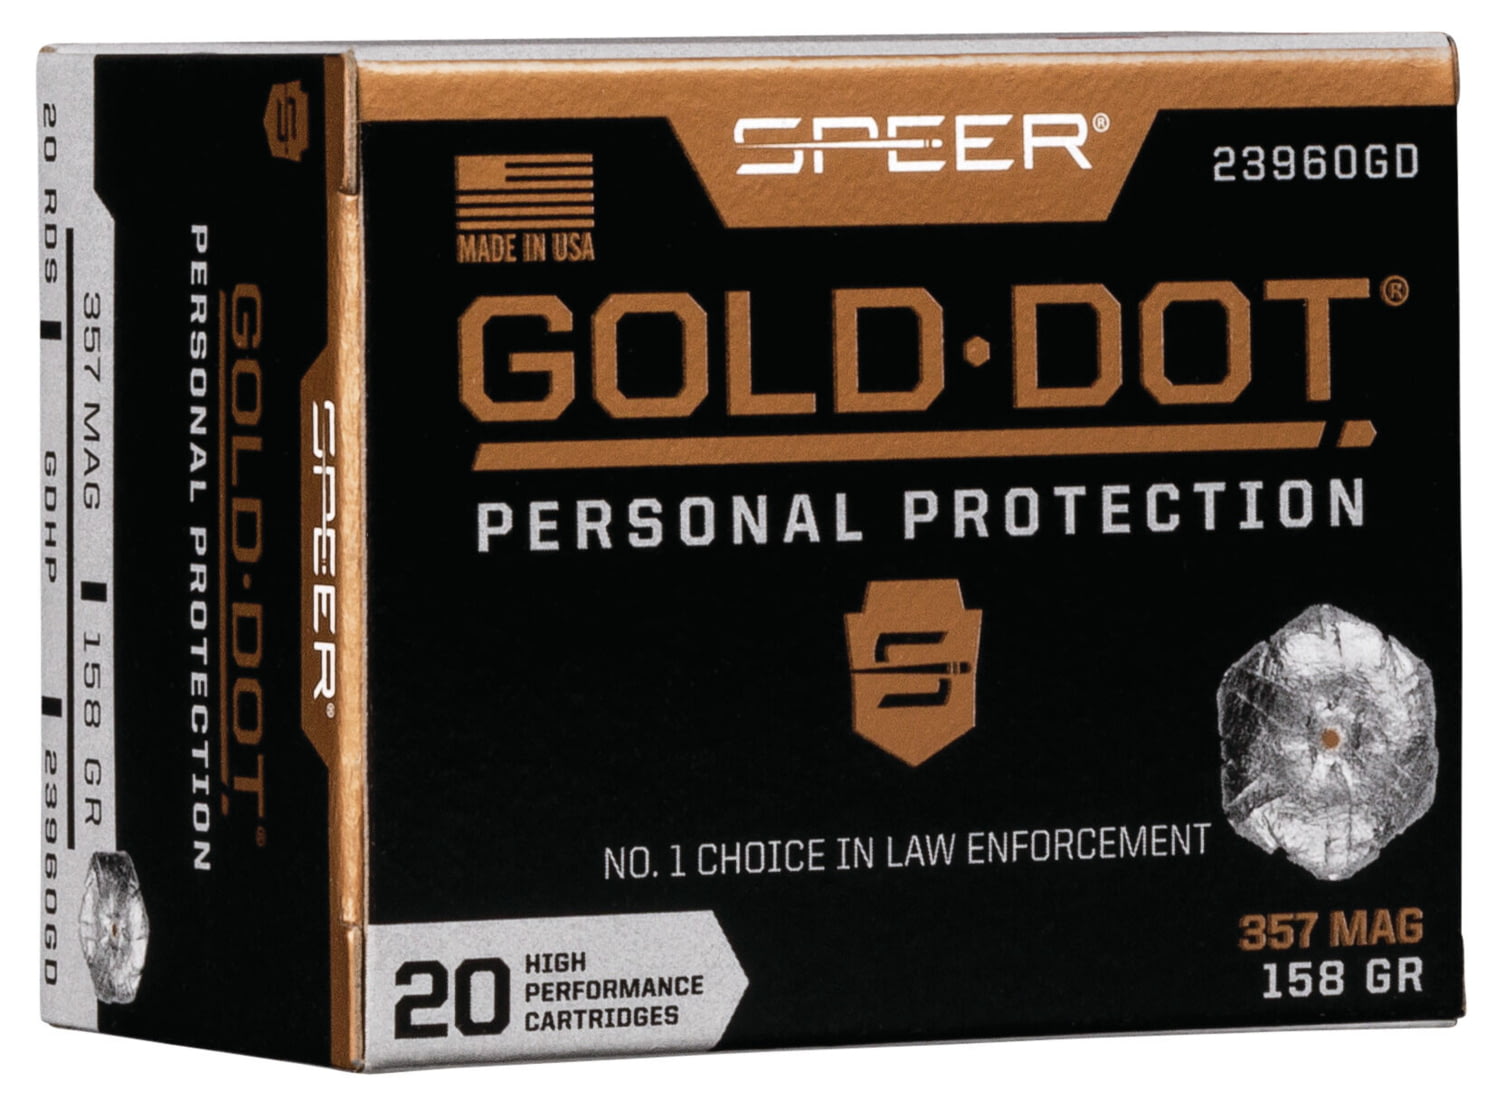 Speer Gold Dot .357 Magnum 158 grain Gold Dot Hollow Point Centerfire Pistol Ammunition